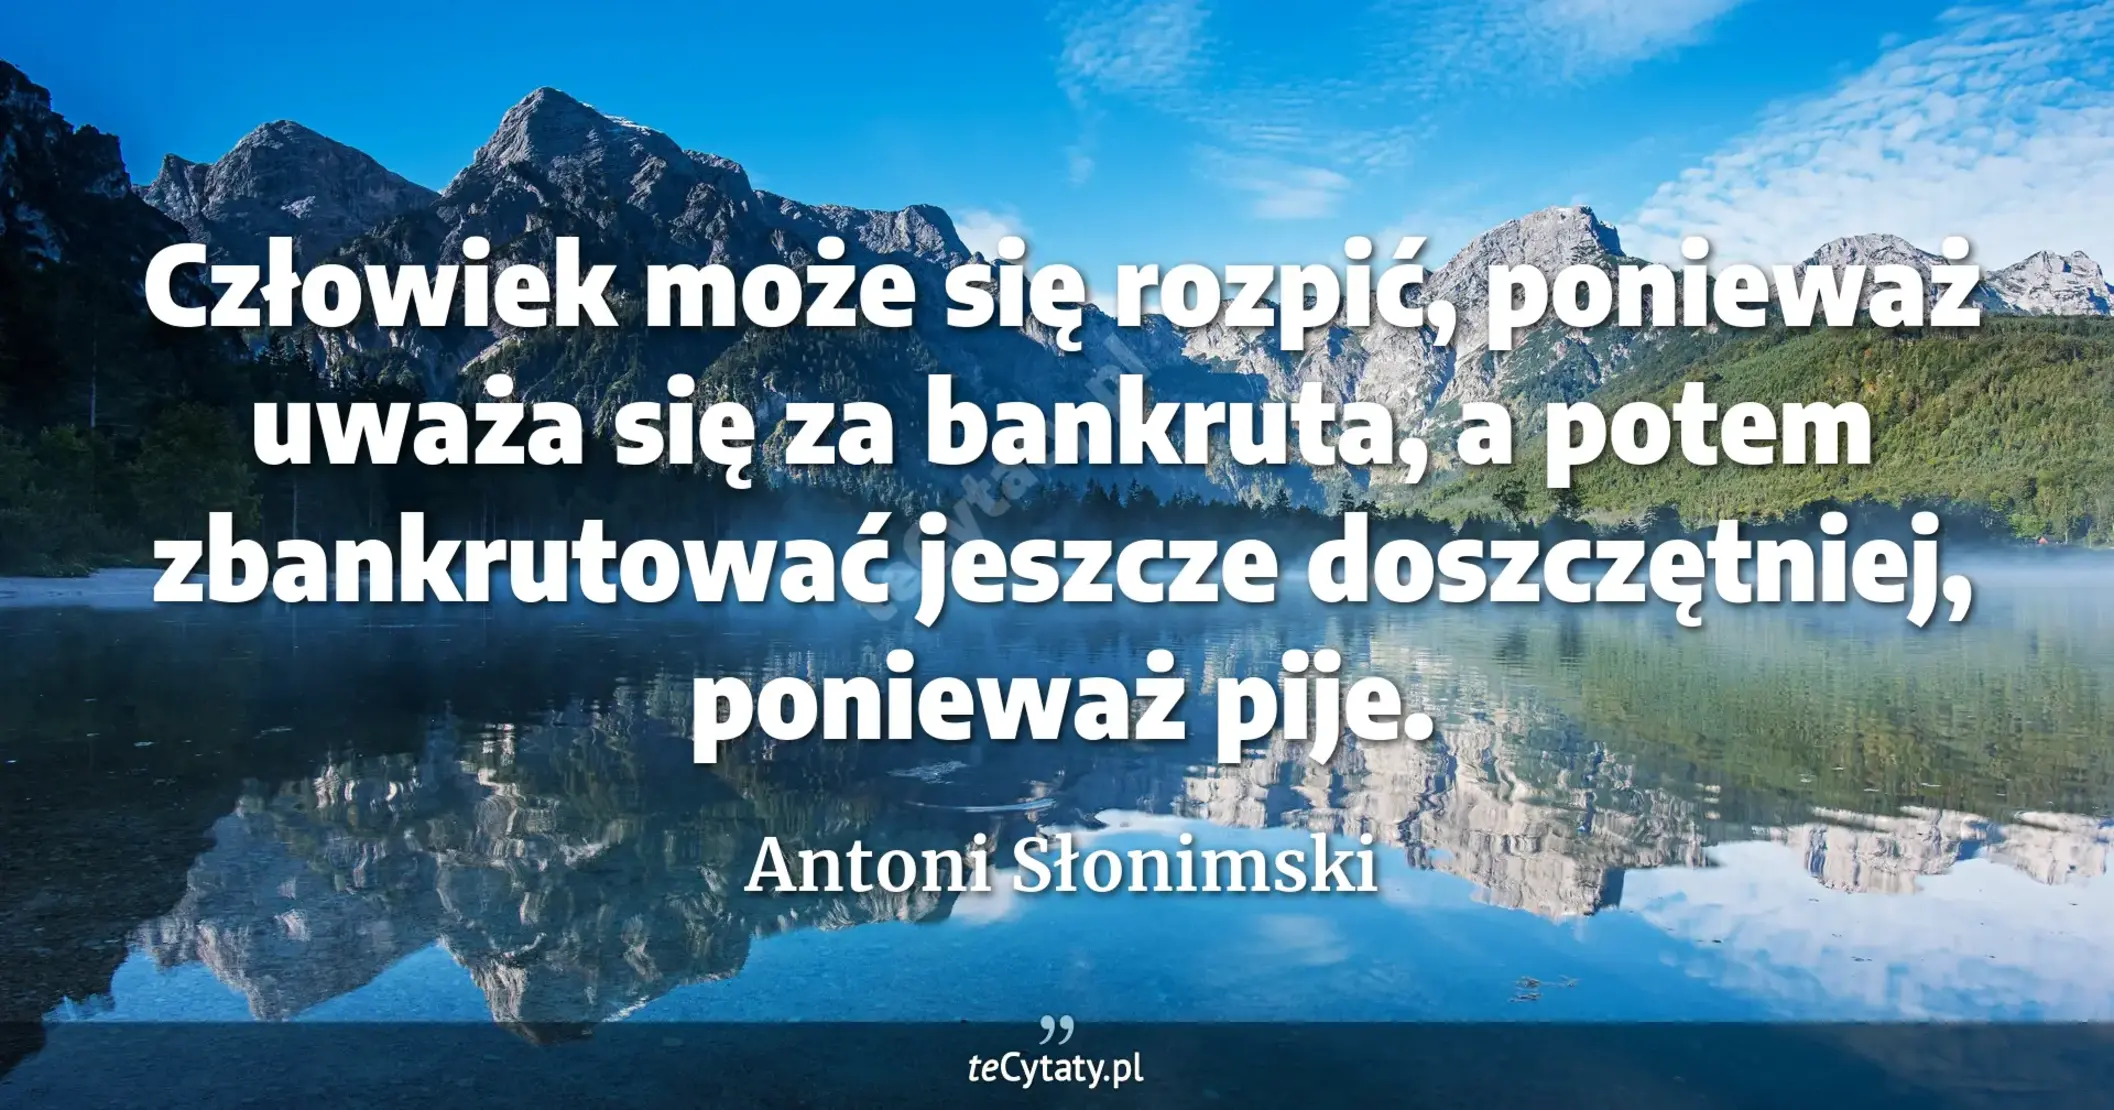 Człowiek może się rozpić, ponieważ uważa się za bankruta, a potem zbankrutować jeszcze doszczętniej, ponieważ pije. - Antoni Słonimski